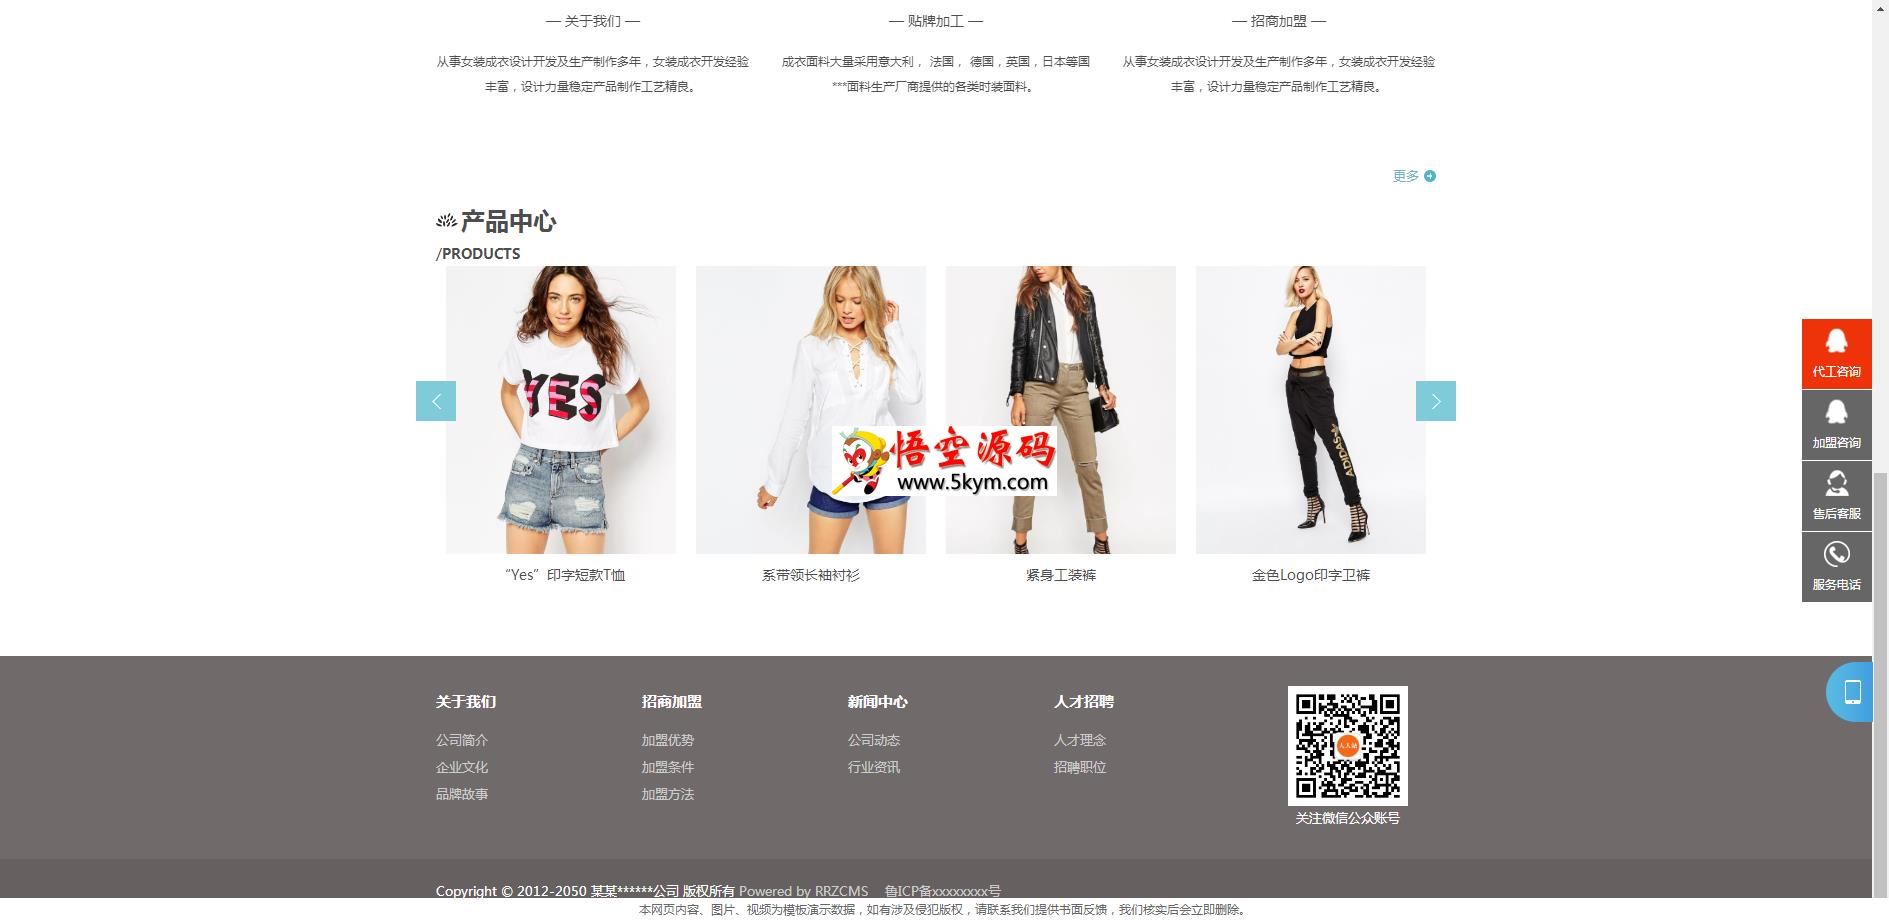 中英双语服装连锁加盟店网站模板(响应式)